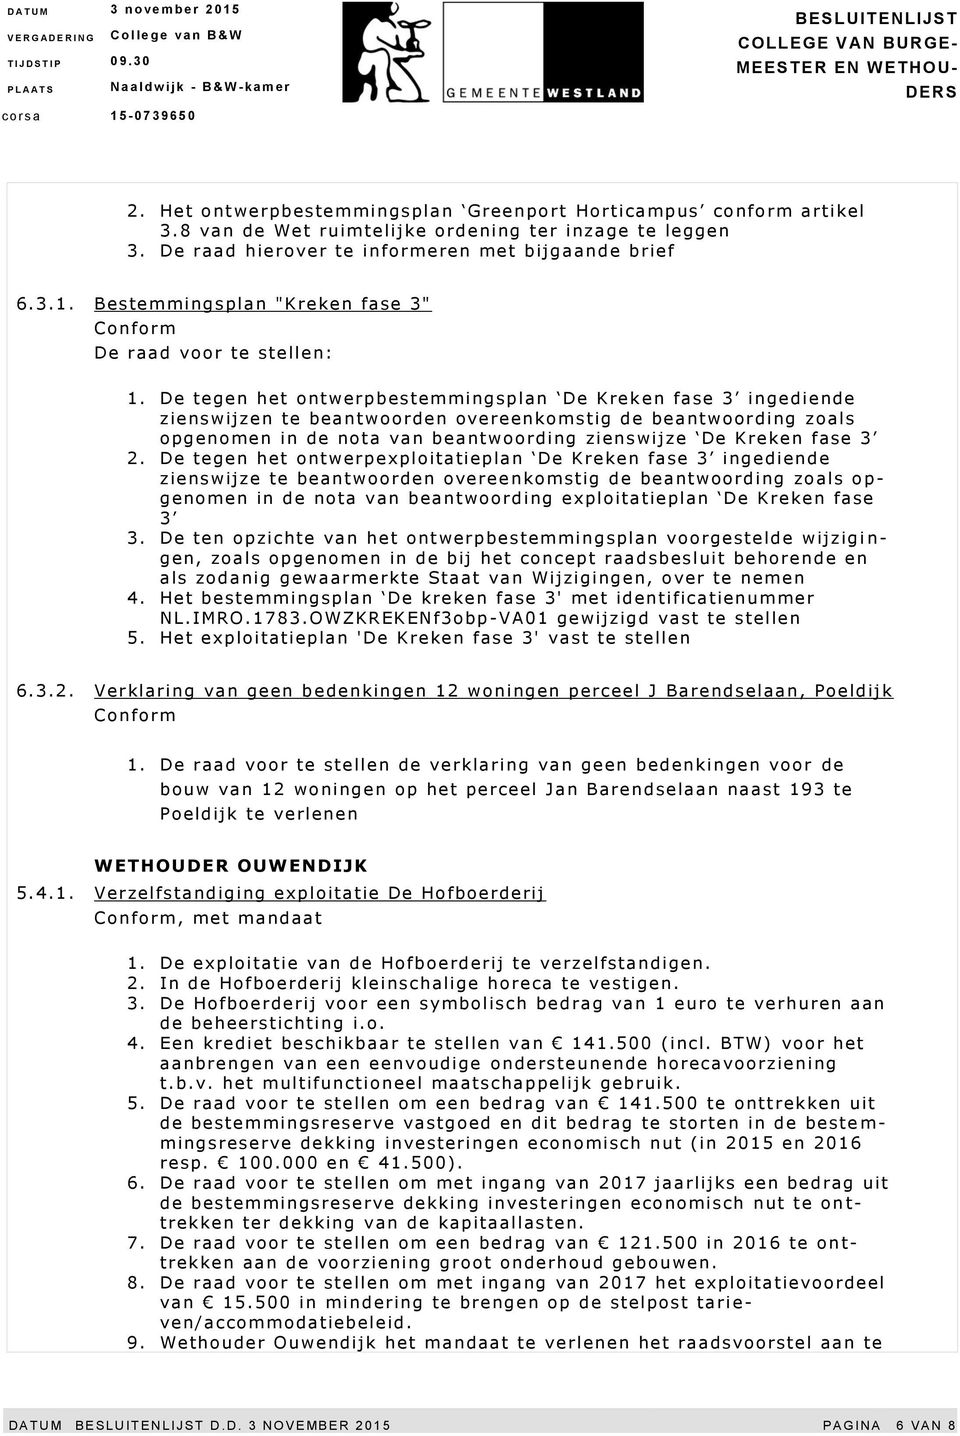 De tegen het ontwerpbestemmingsplan De Krek en fase 3 ingediende zienswijzen te beantwoorden overeenkomstig de beantwoording zoals opgenomen in de nota van beantwoording zienswijze De Kreken fase 3 2.